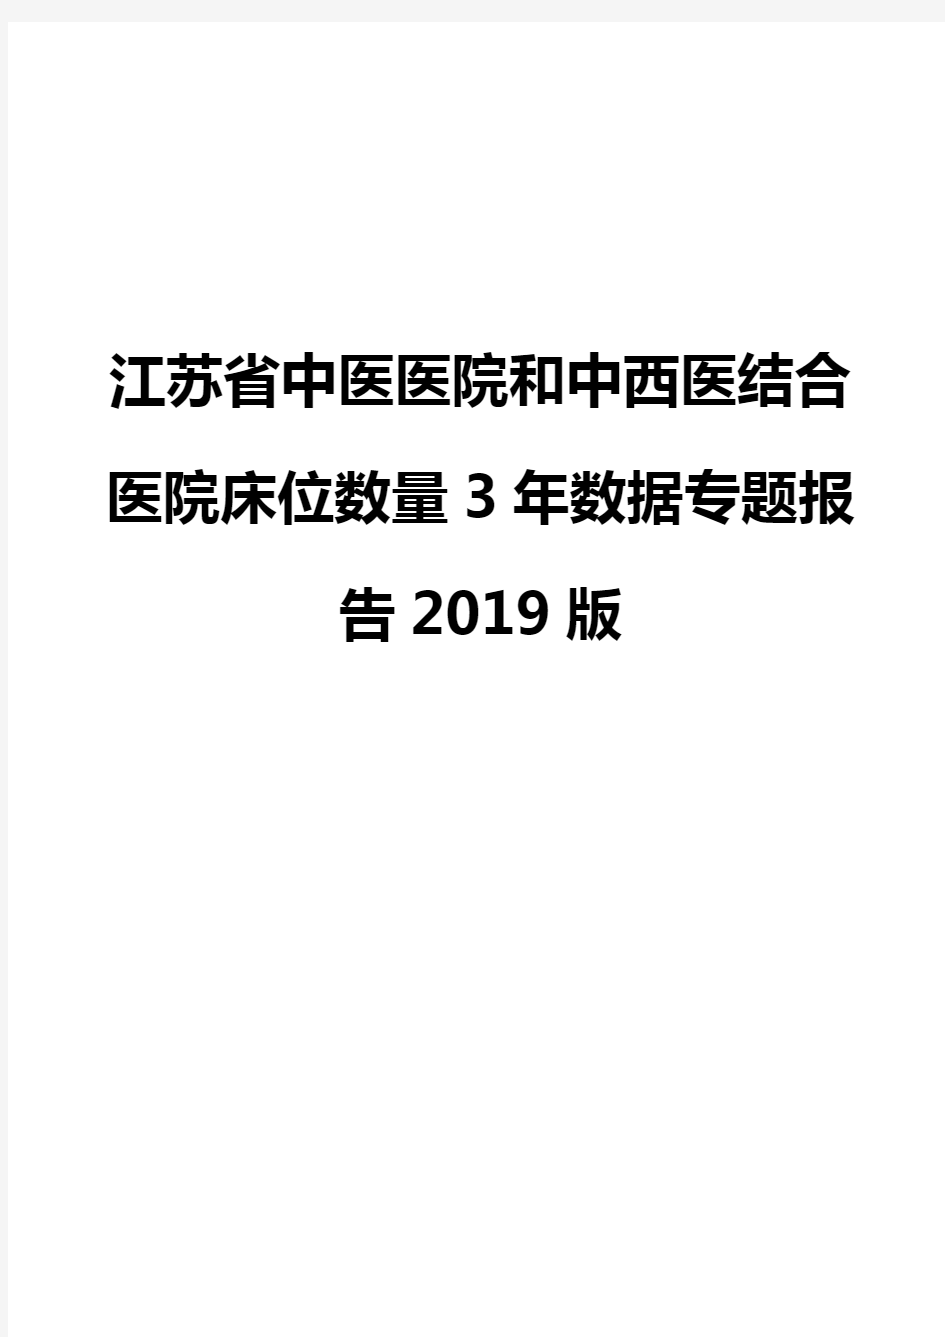 江苏省中医医院和中西医结合医院床位数量3年数据专题报告2019版